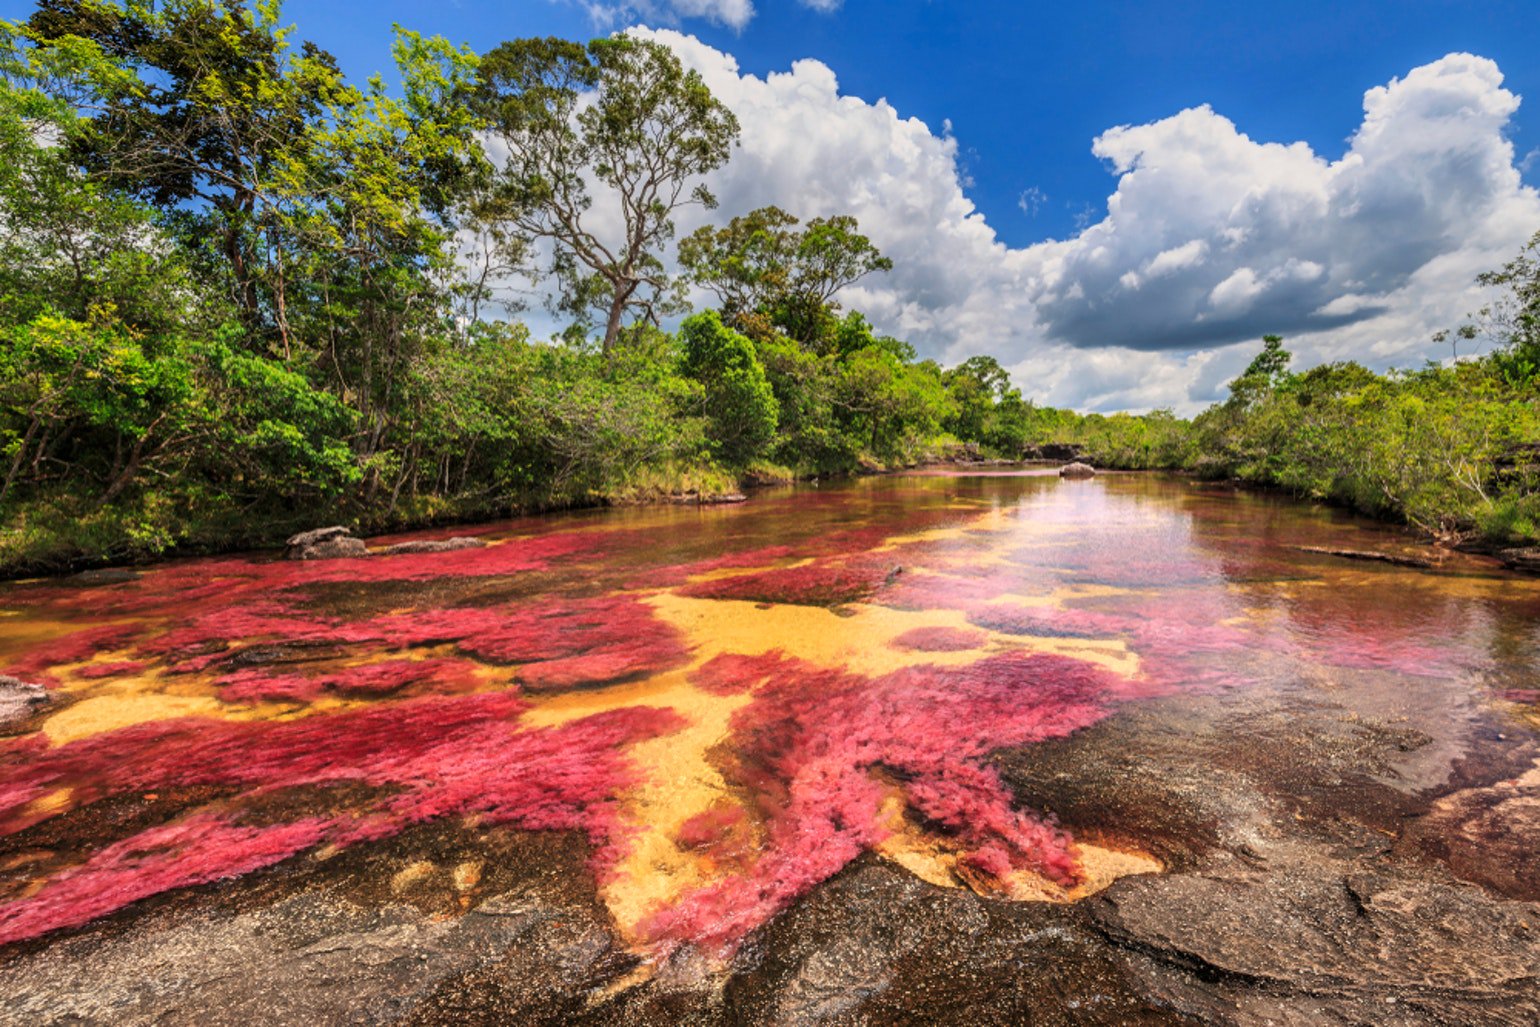 位于南美洲哥伦比亚北部的水晶河(cano cristales),亦有人称作彩虹河